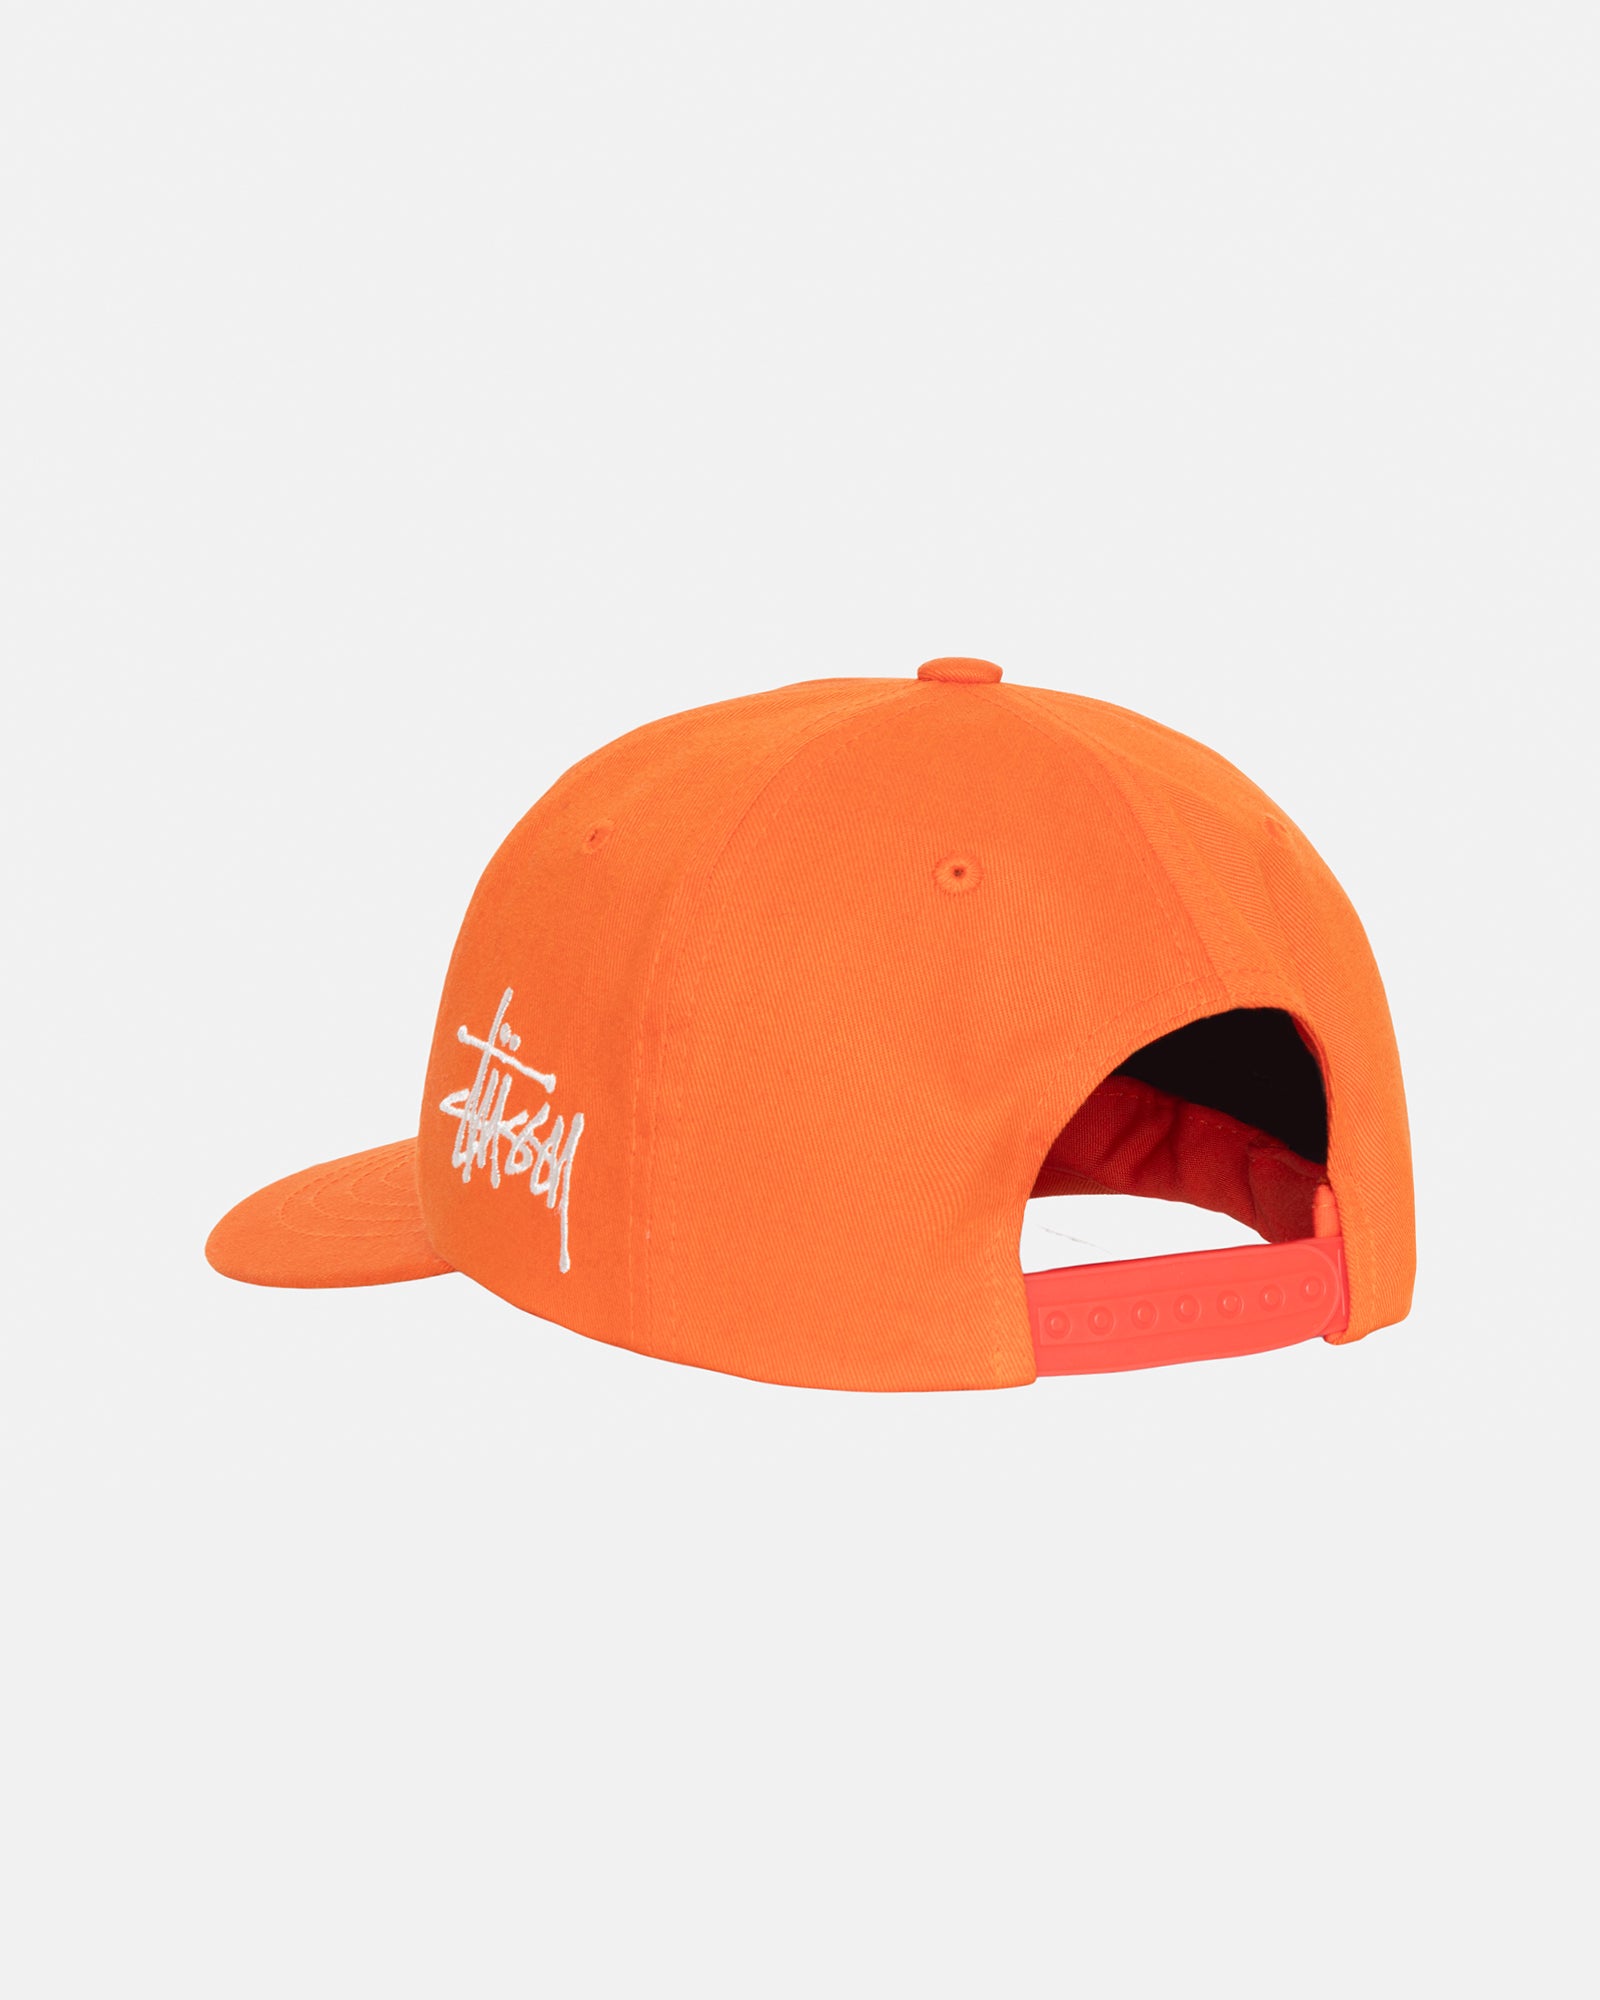 Stüssy Low Pro Chenille S Snapback Orange Headwear